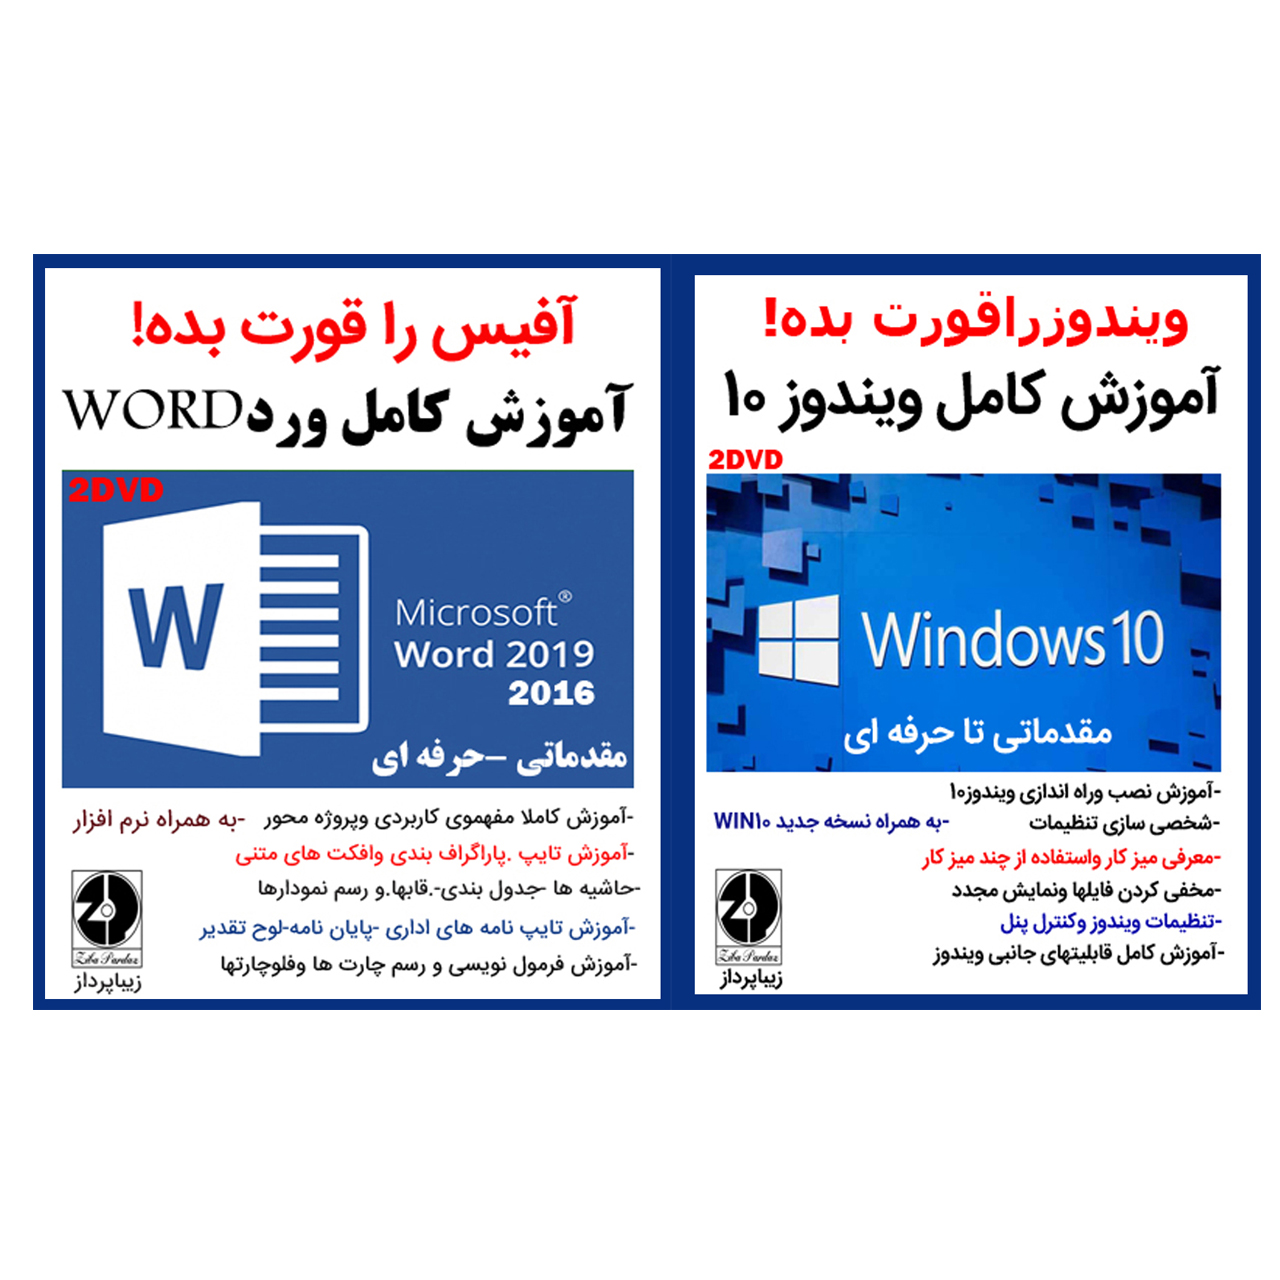 نرم افزار آموزش کامل ویندوز 10 نشرزیباپرداز به همراه نرم افزار آموزش کامل ورد نشر زیباپرداز